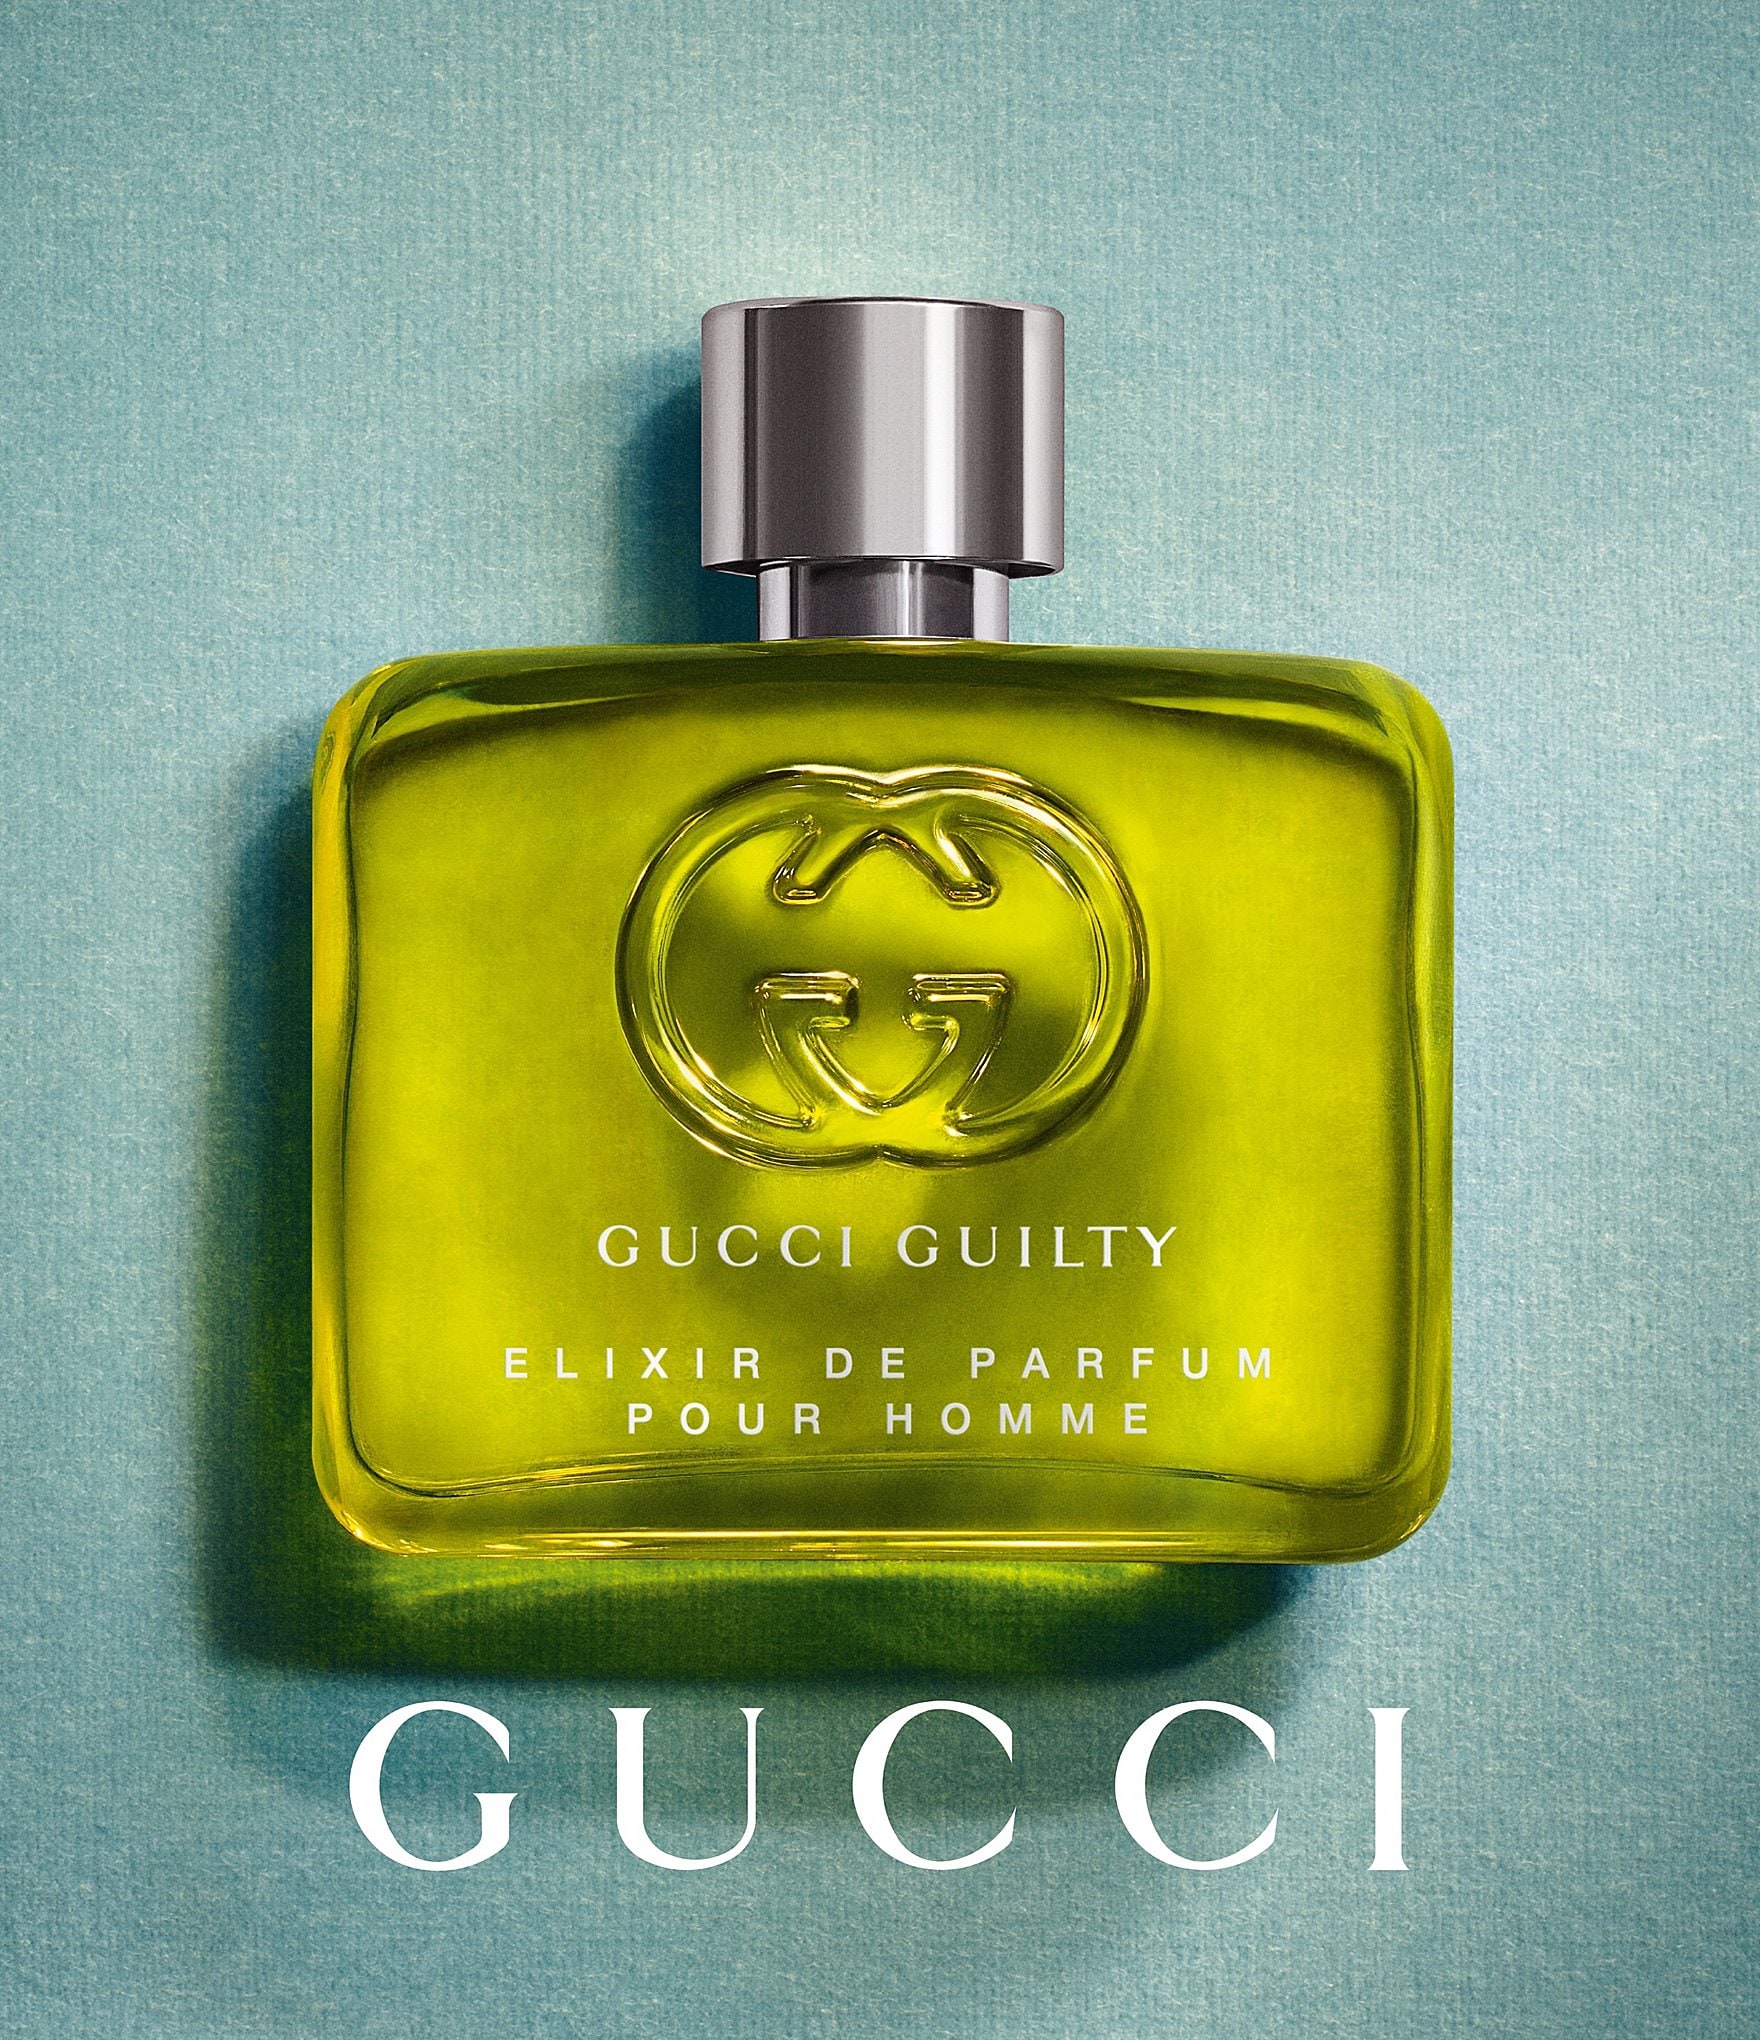 Gucci Guilty Elixir de Parfum ~ Nuevas Fragancias